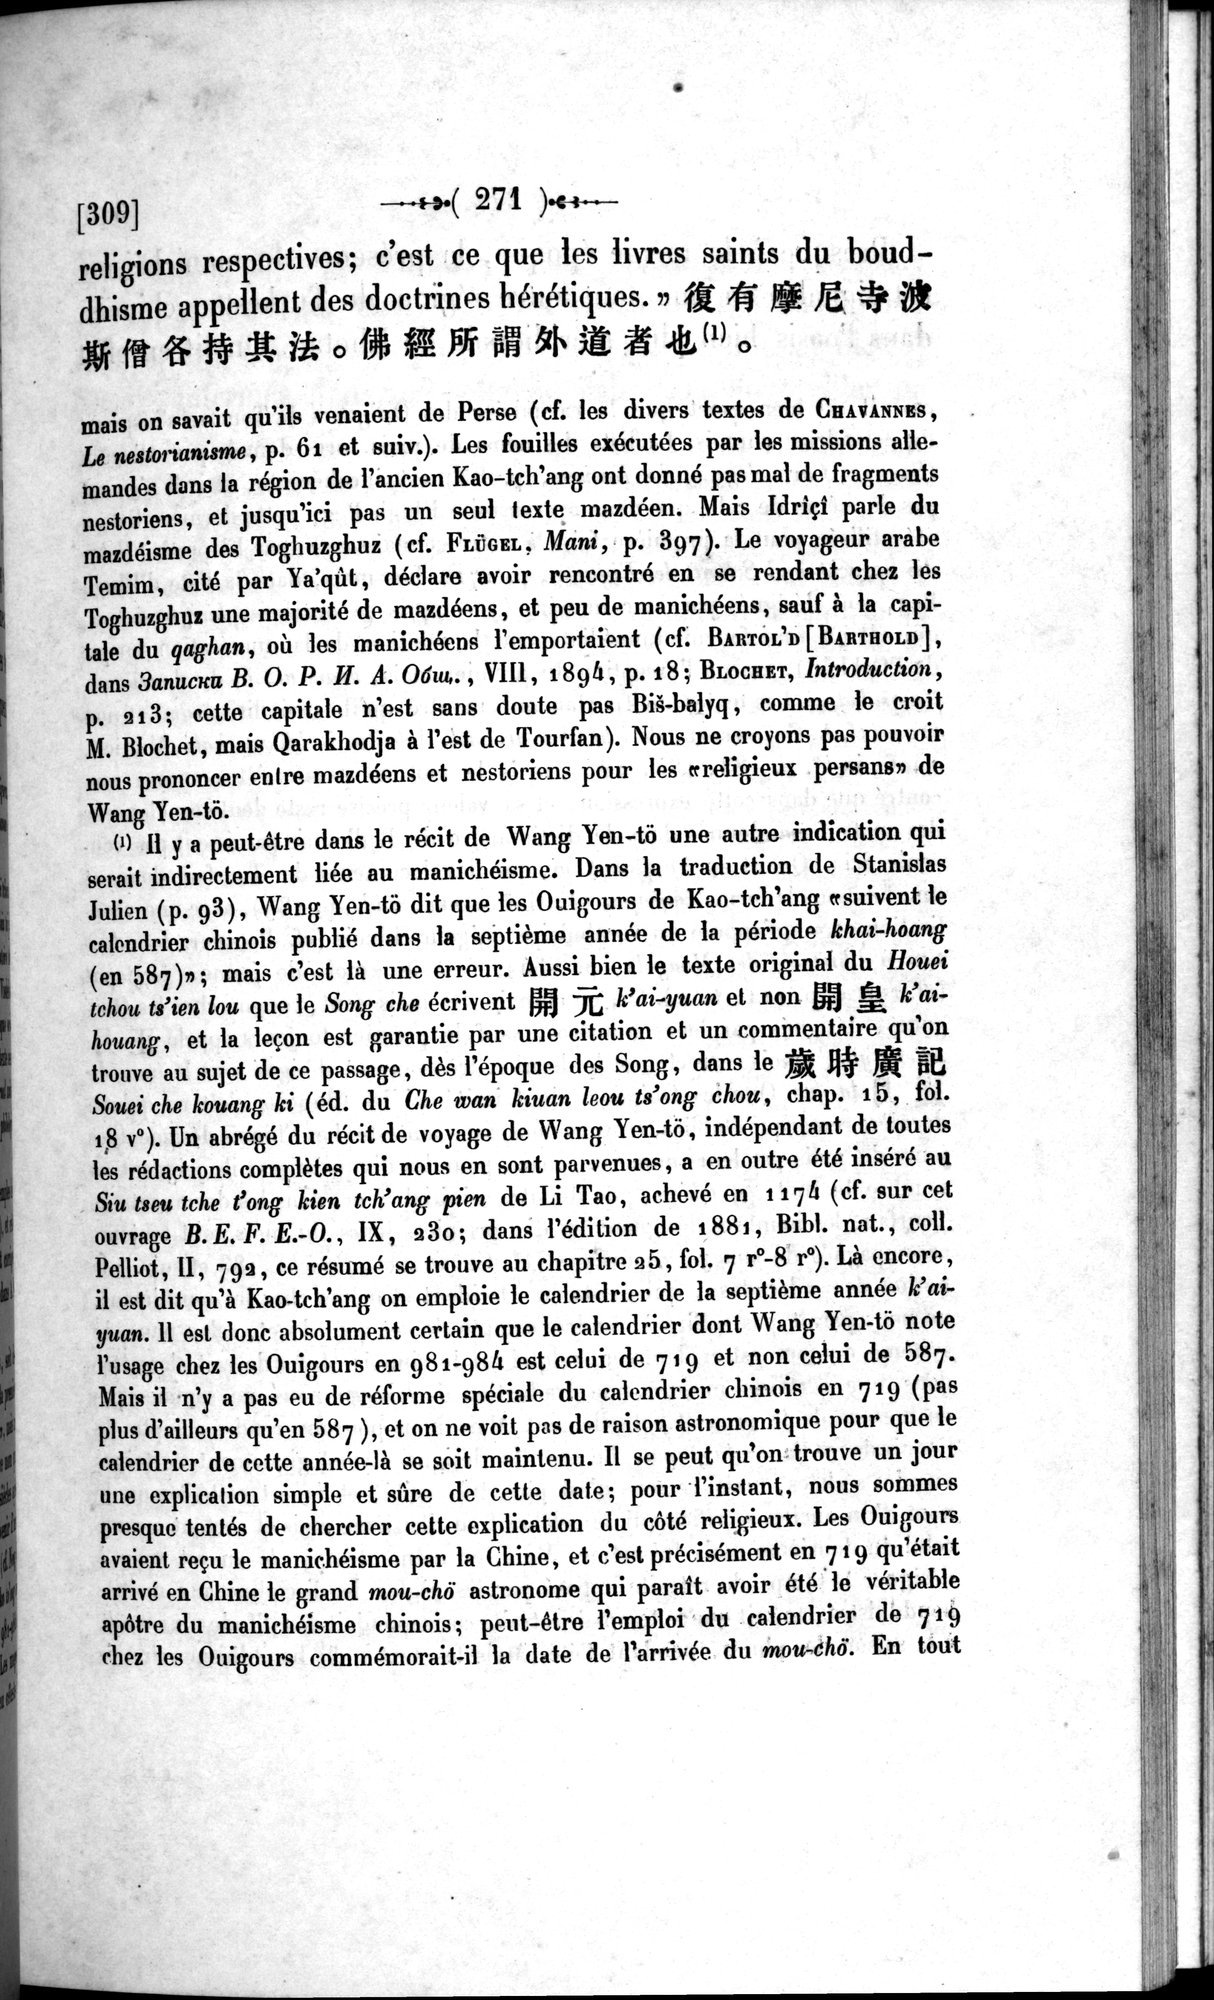 Un traité manichéen retrouvé en Chine : vol.1 / Page 281 (Grayscale High Resolution Image)